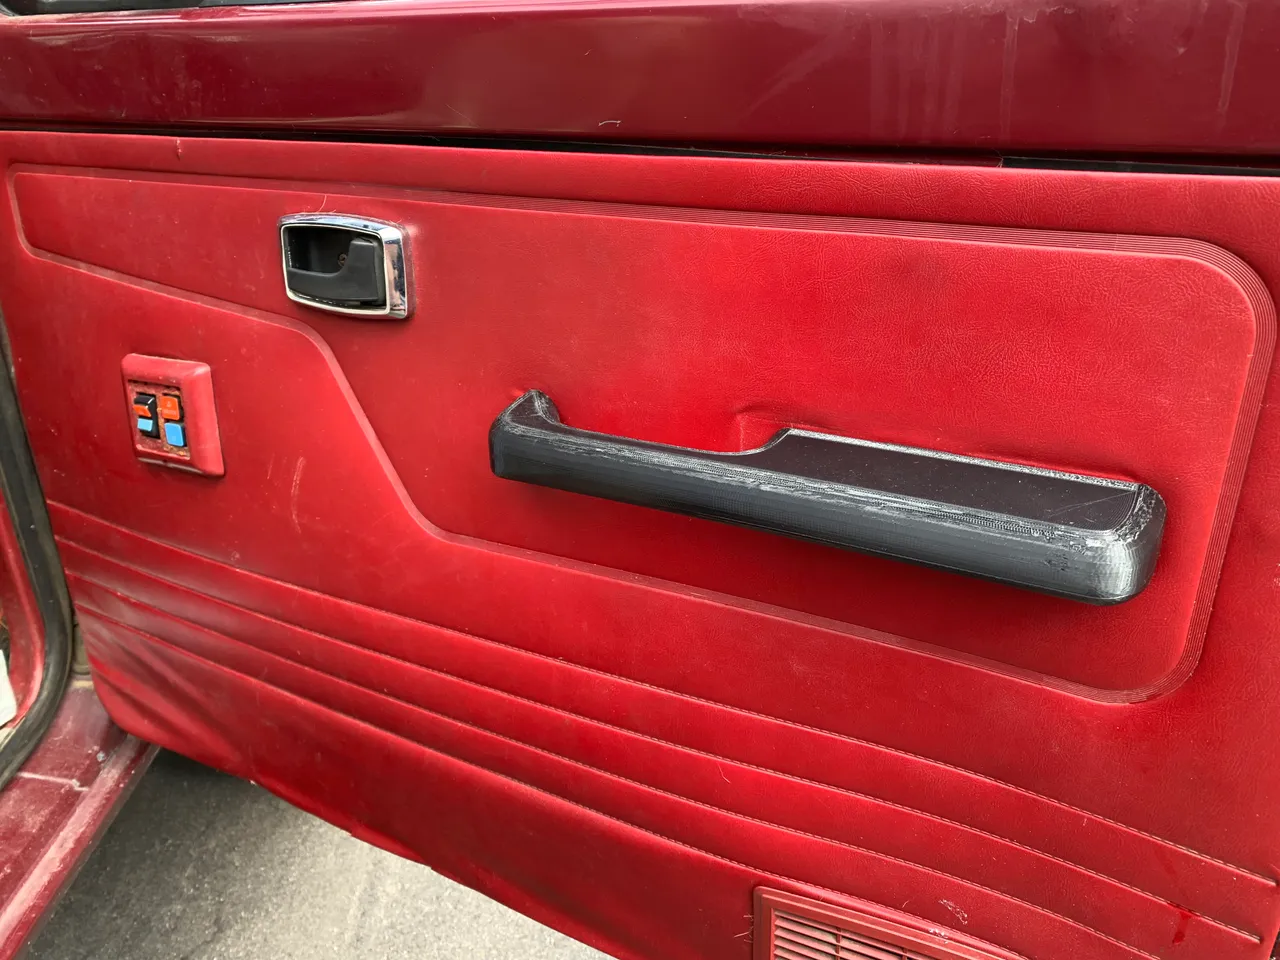 Ford Ranger Gen 1 interior door handle by MRussell2014